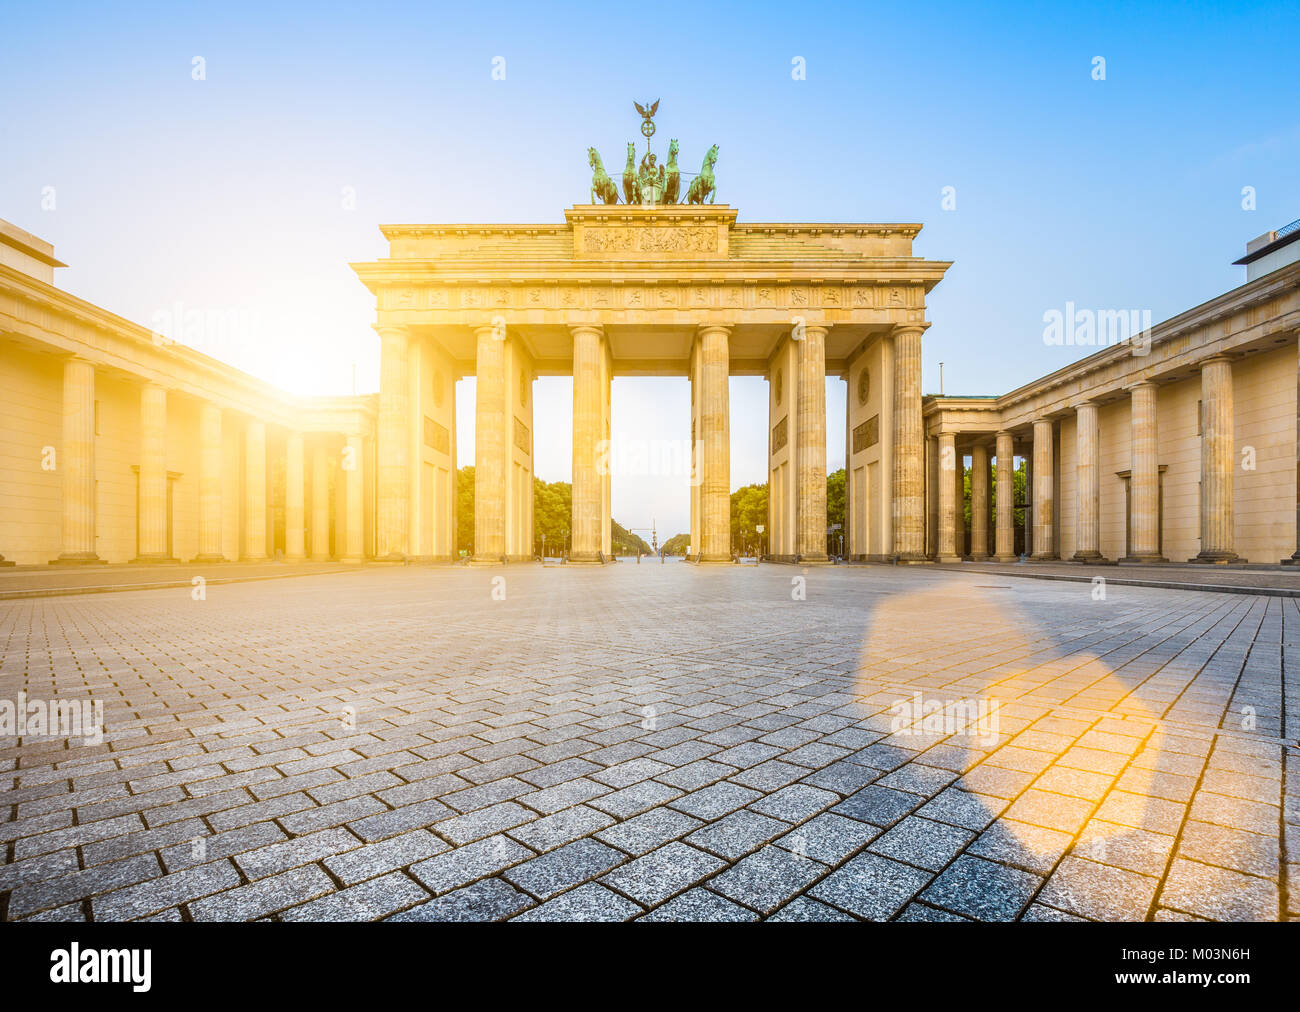 Famoso Brandenburger Tor (Porta di Brandeburgo), uno dei più noti monumenti e simboli nazionali di Germania, all'alba, Berlino, Germania Foto Stock